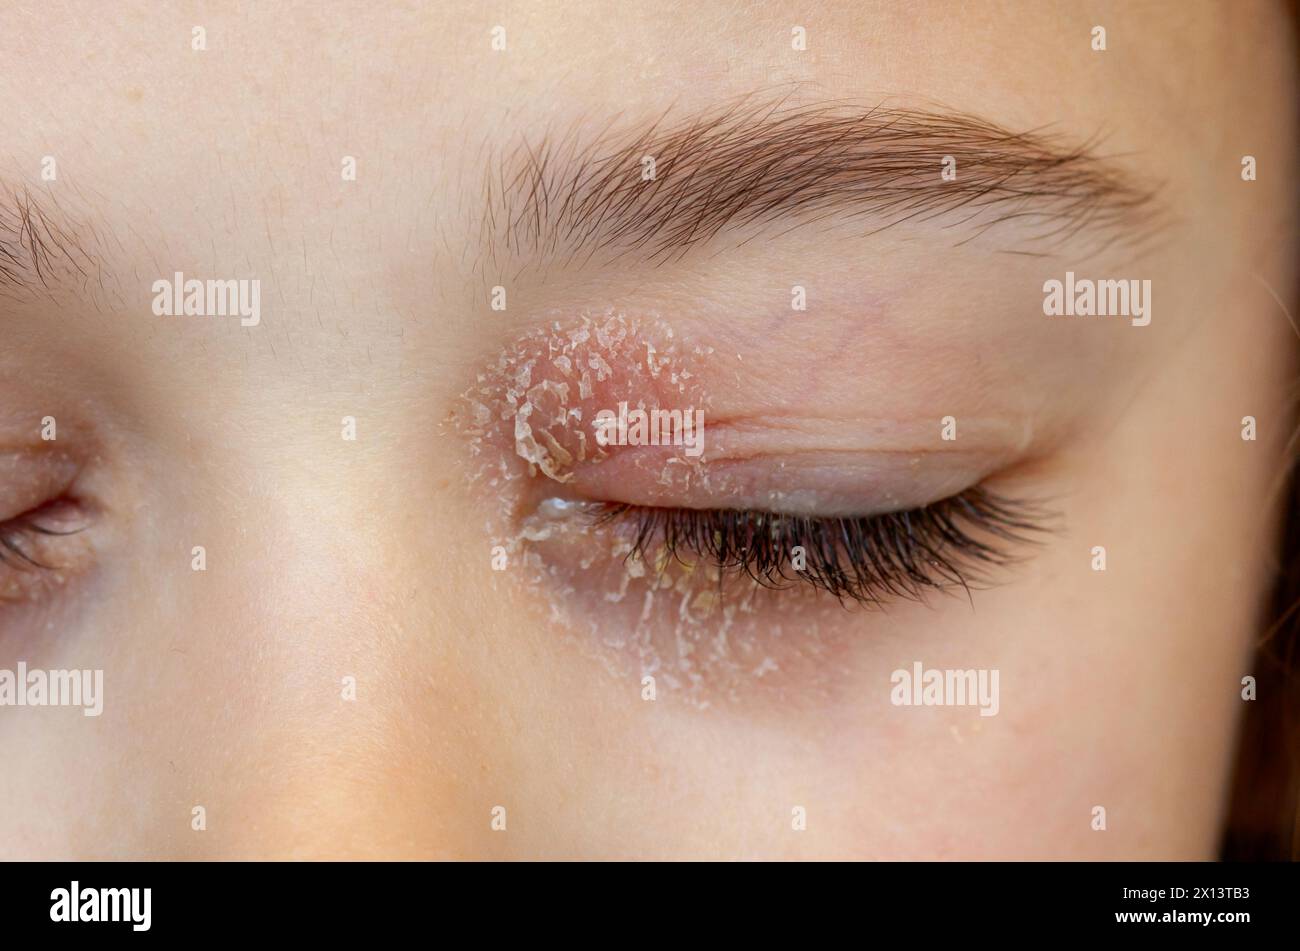 Occhio chiuso di una bambina affetta da dermatite atopica oculare o eczema palpebrale. Foto Stock